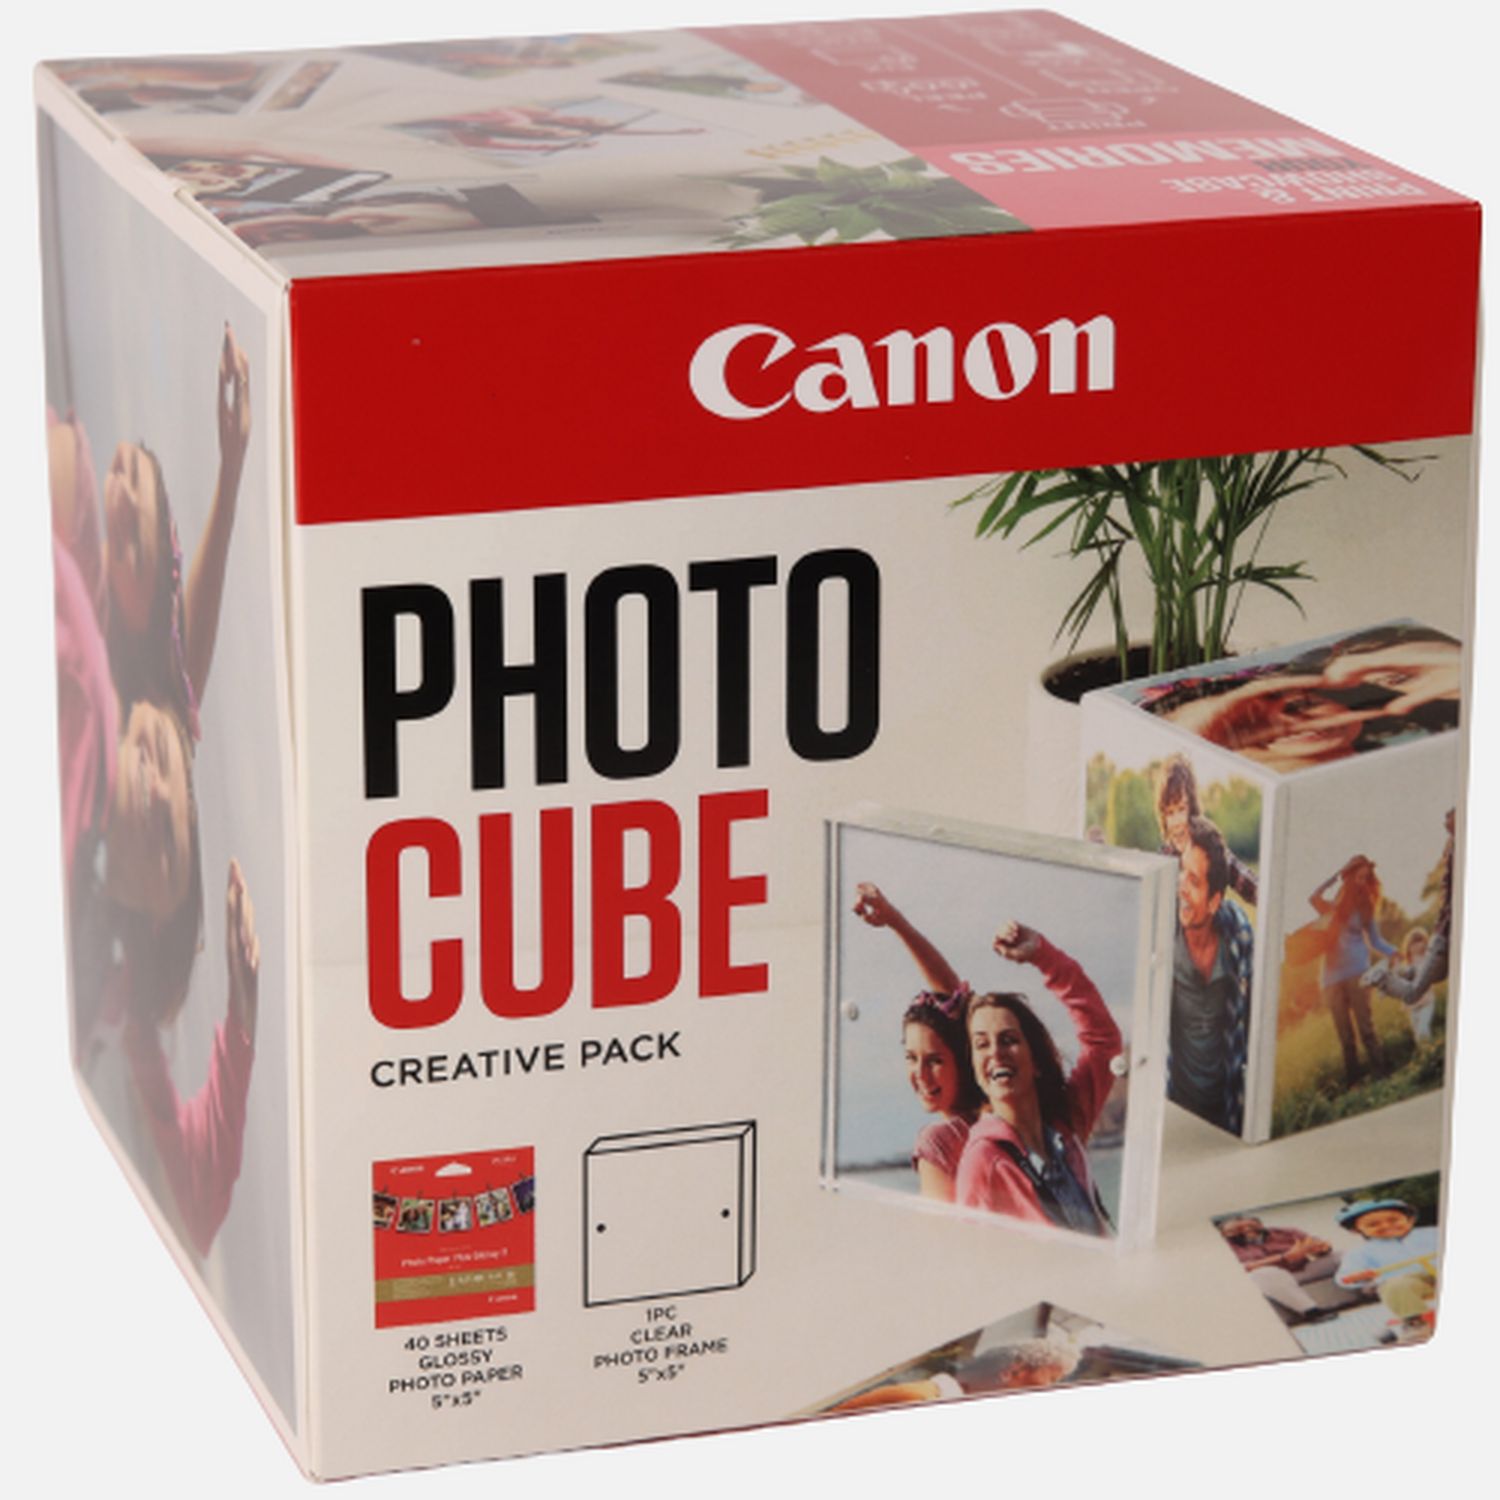 Image of Canon Photo Cube e cornice + carta fotografica lucida Plus Glossy II PP-201 da 5"x5" (40 fogli) - Pacchetto creativo, rosa